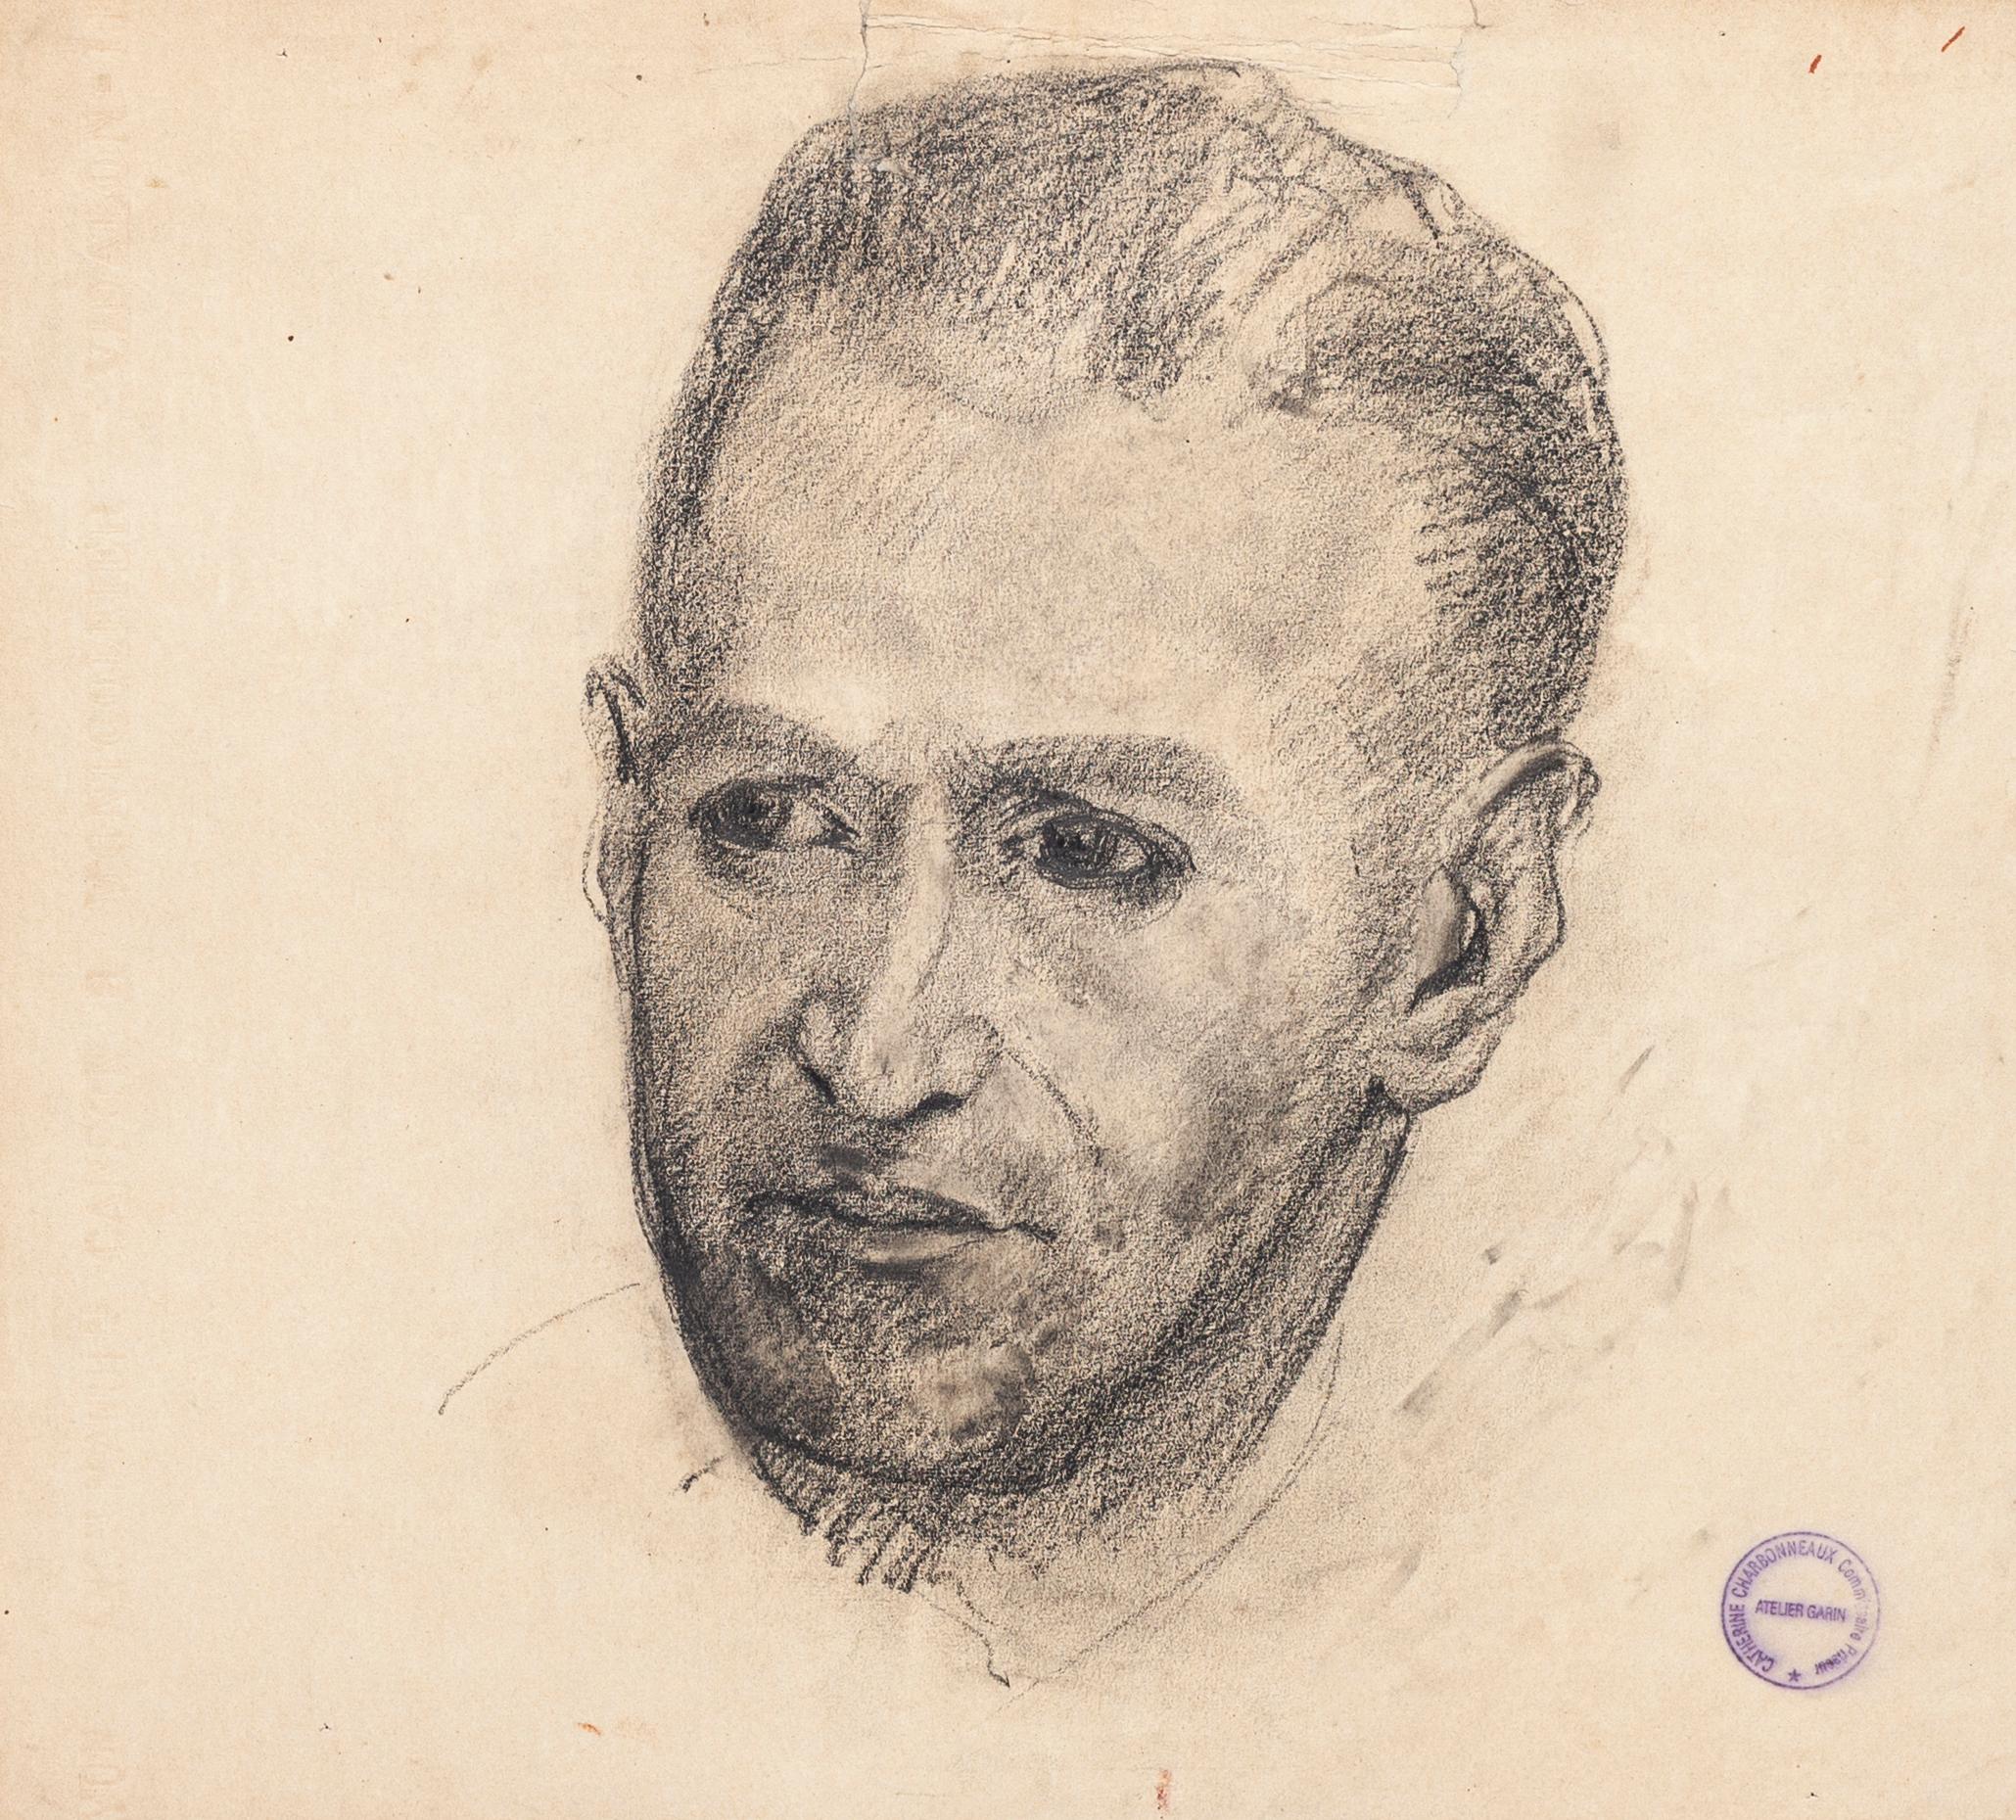 Portrait masculin est un dessin original au crayon sur papier couleur ivoire, réalisé par l'artiste français Paul Garin (Nice, 1898-1963) dans les années 1960.

Cachet à l'encre noire dans le coin inférieur droit : "Catherine Charbonneux Commissaire